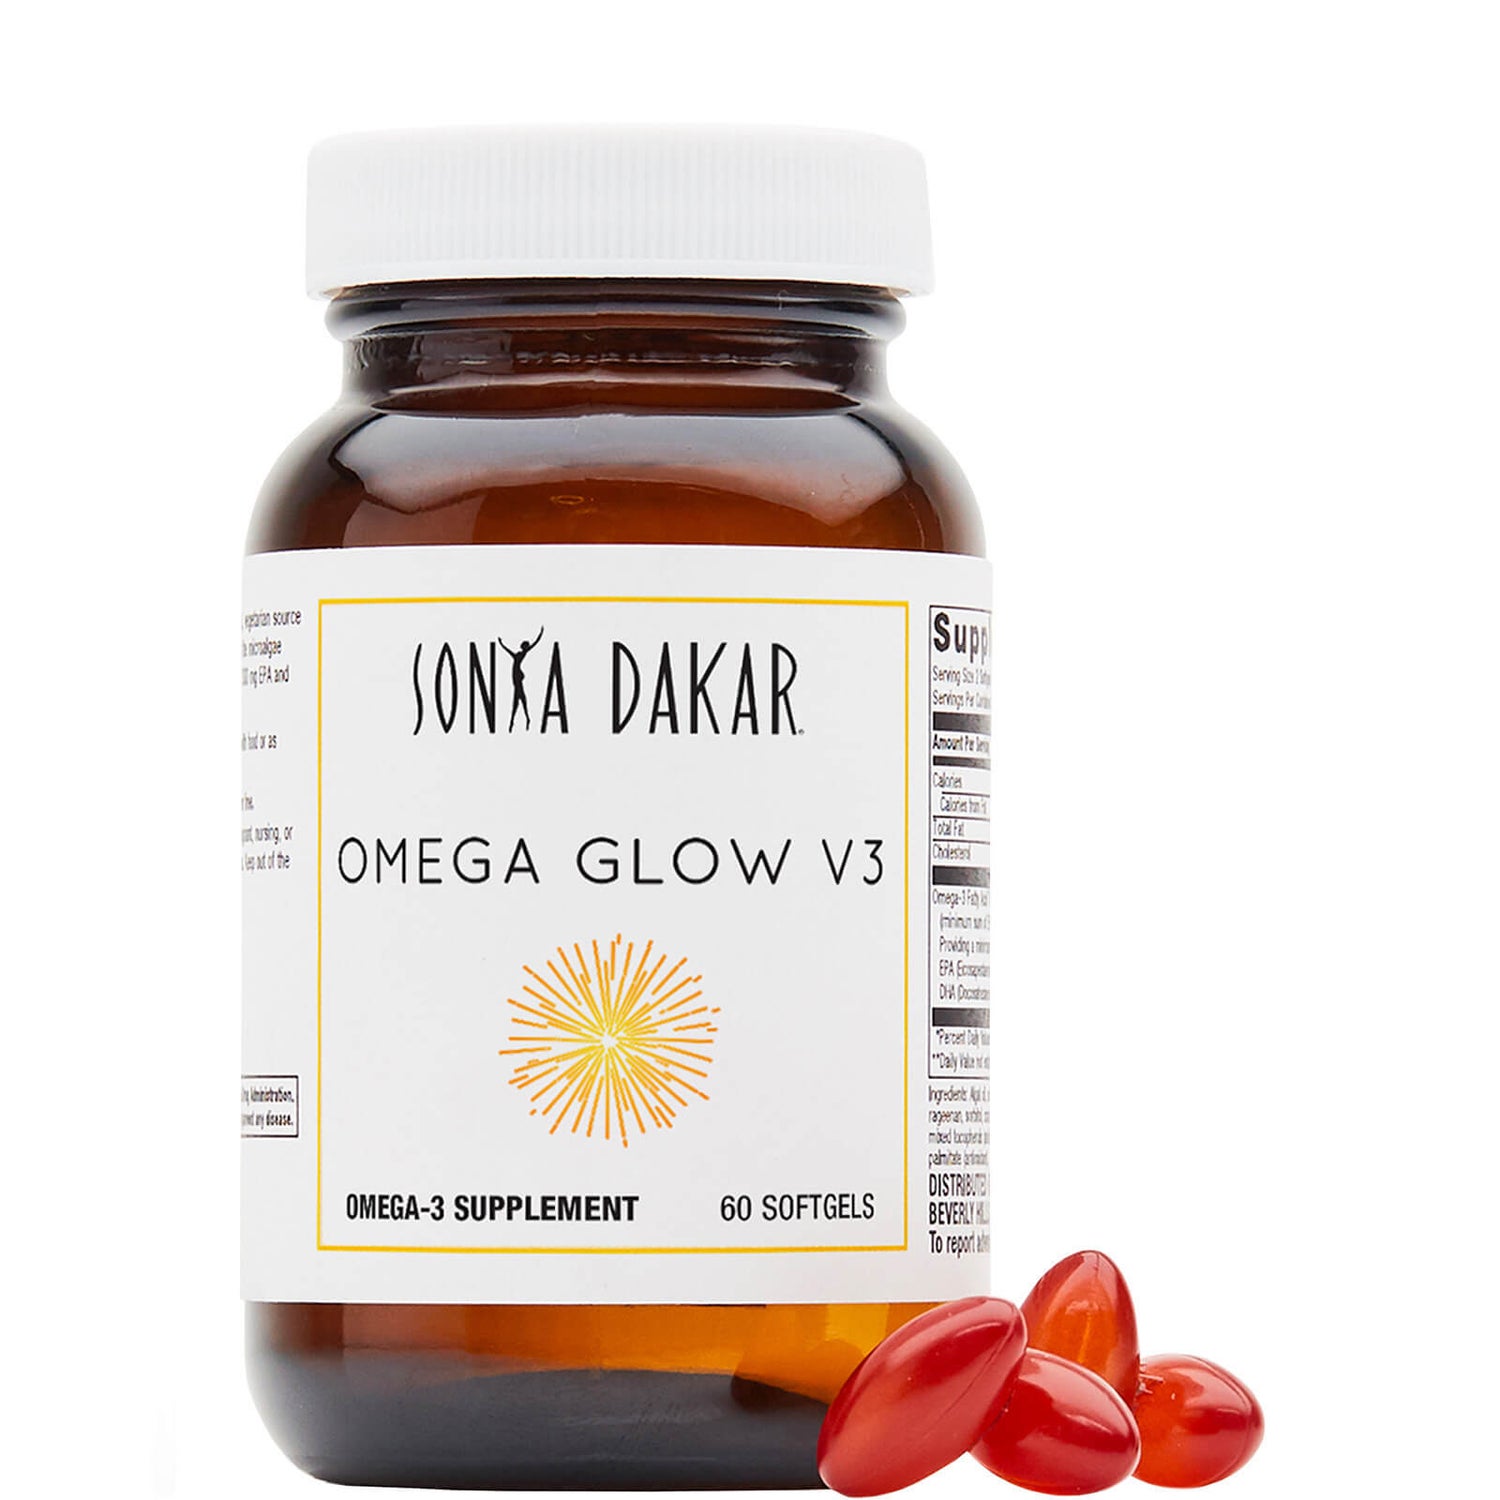 Sonya Dakar Omega Glow V3